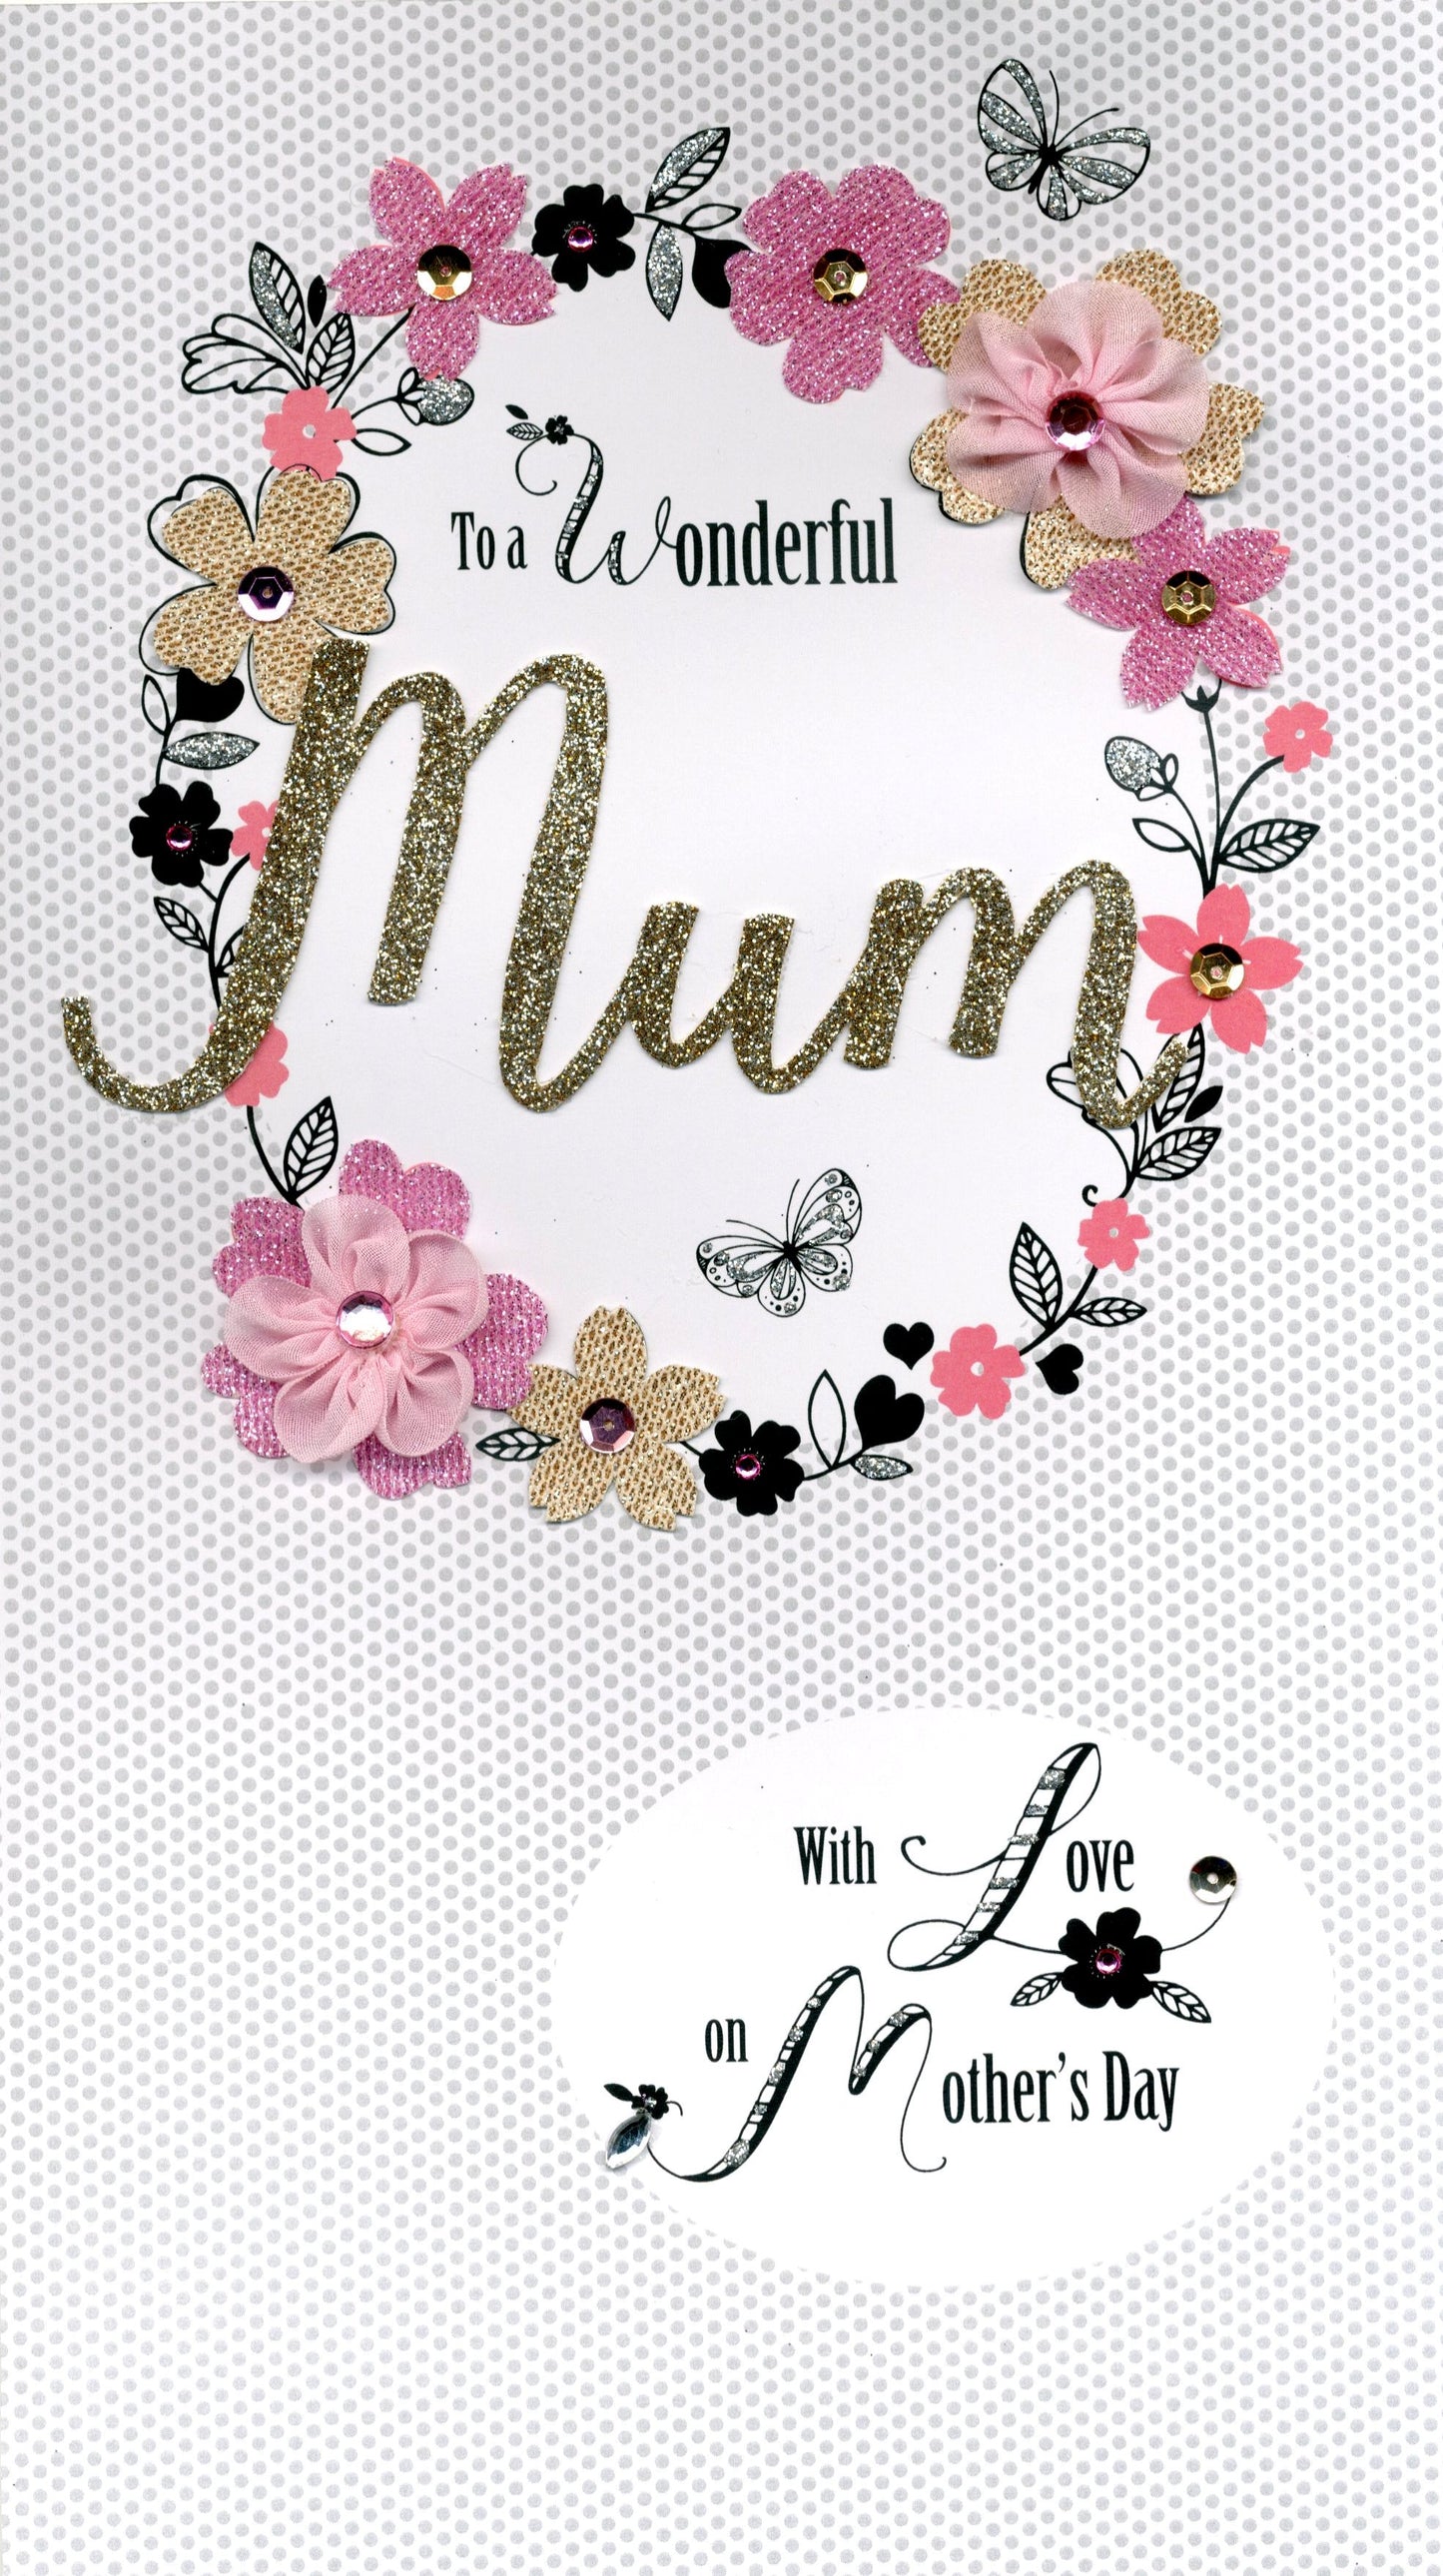 Wonderful Mum Boxed Luxury Lavish Mother's Day Card